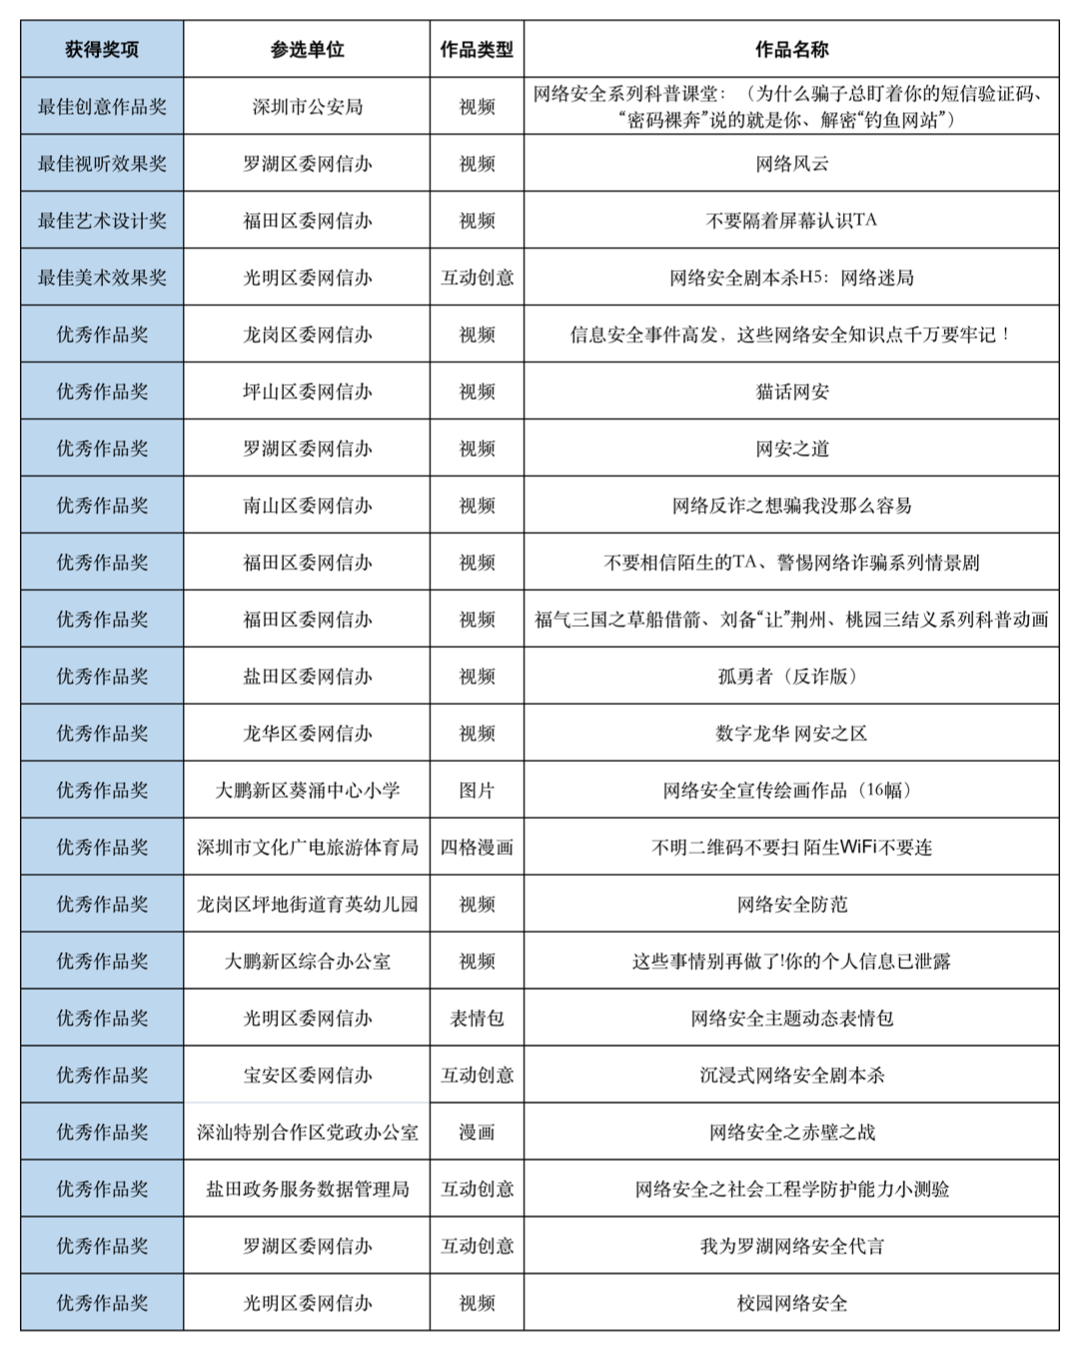 2022年深圳市网络安全宣传周群众性宣传作品获奖名单出炉